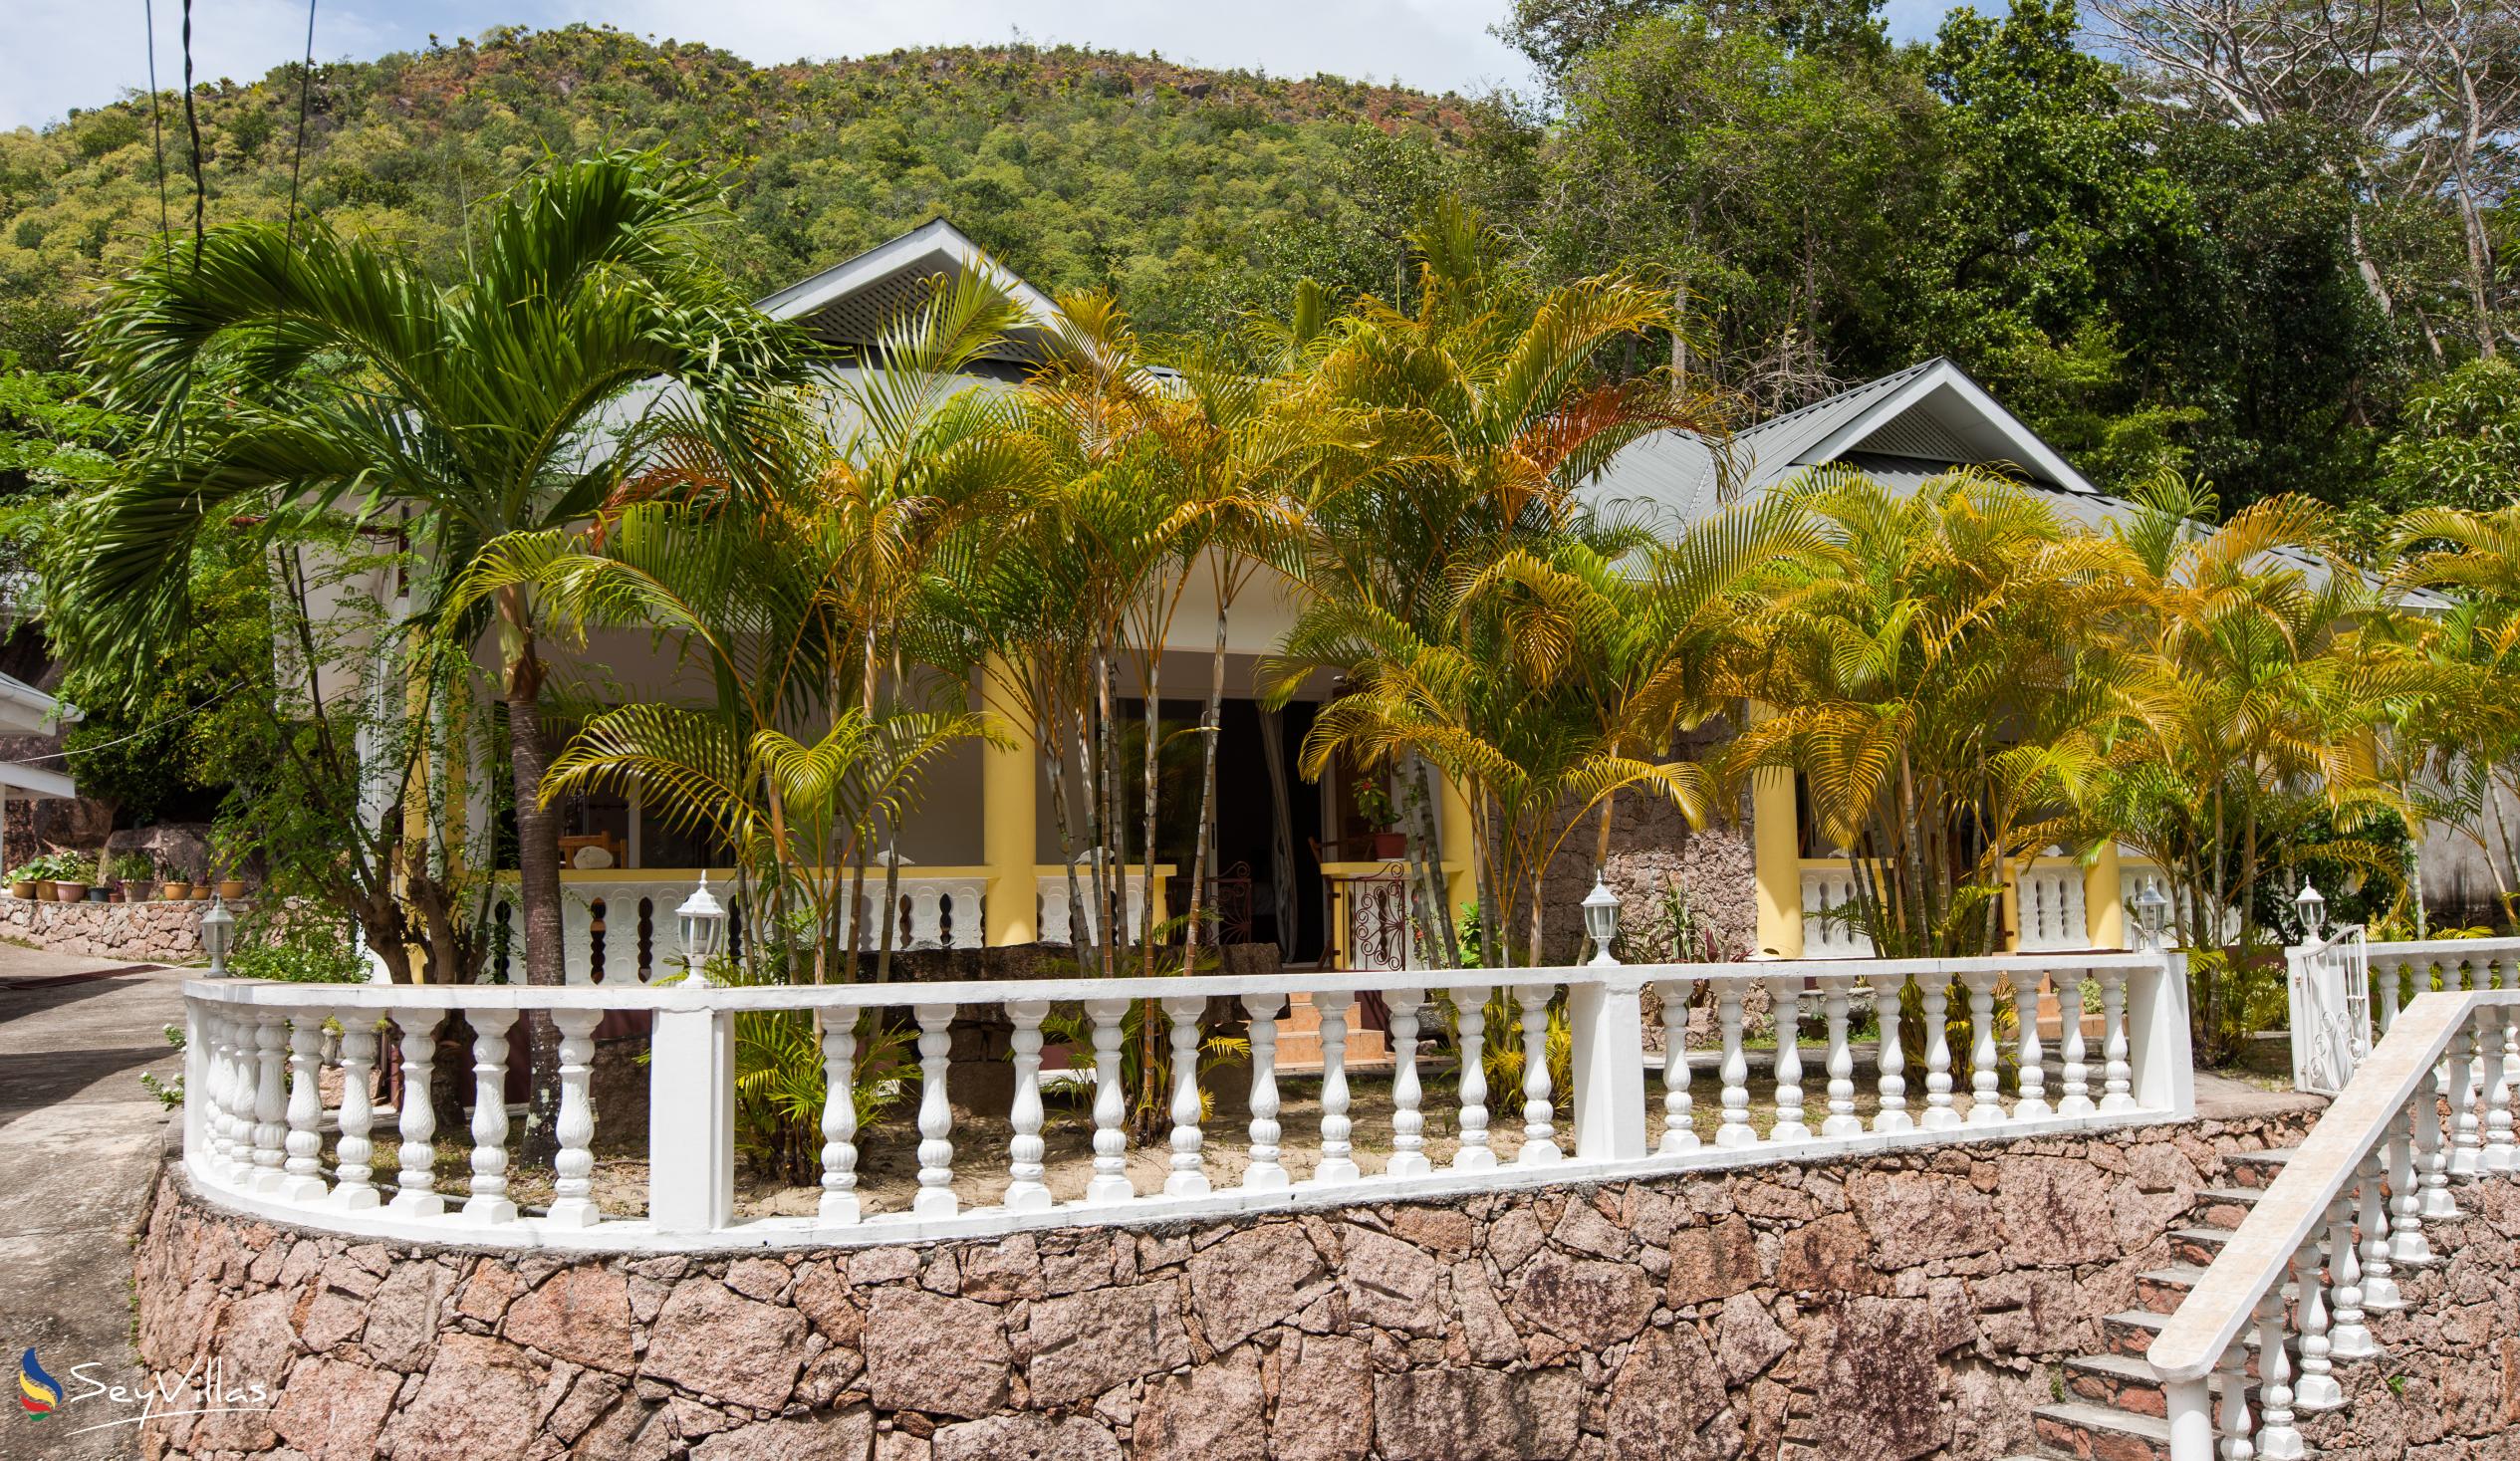 Photo 3: Acquario Villa - Outdoor area - Praslin (Seychelles)